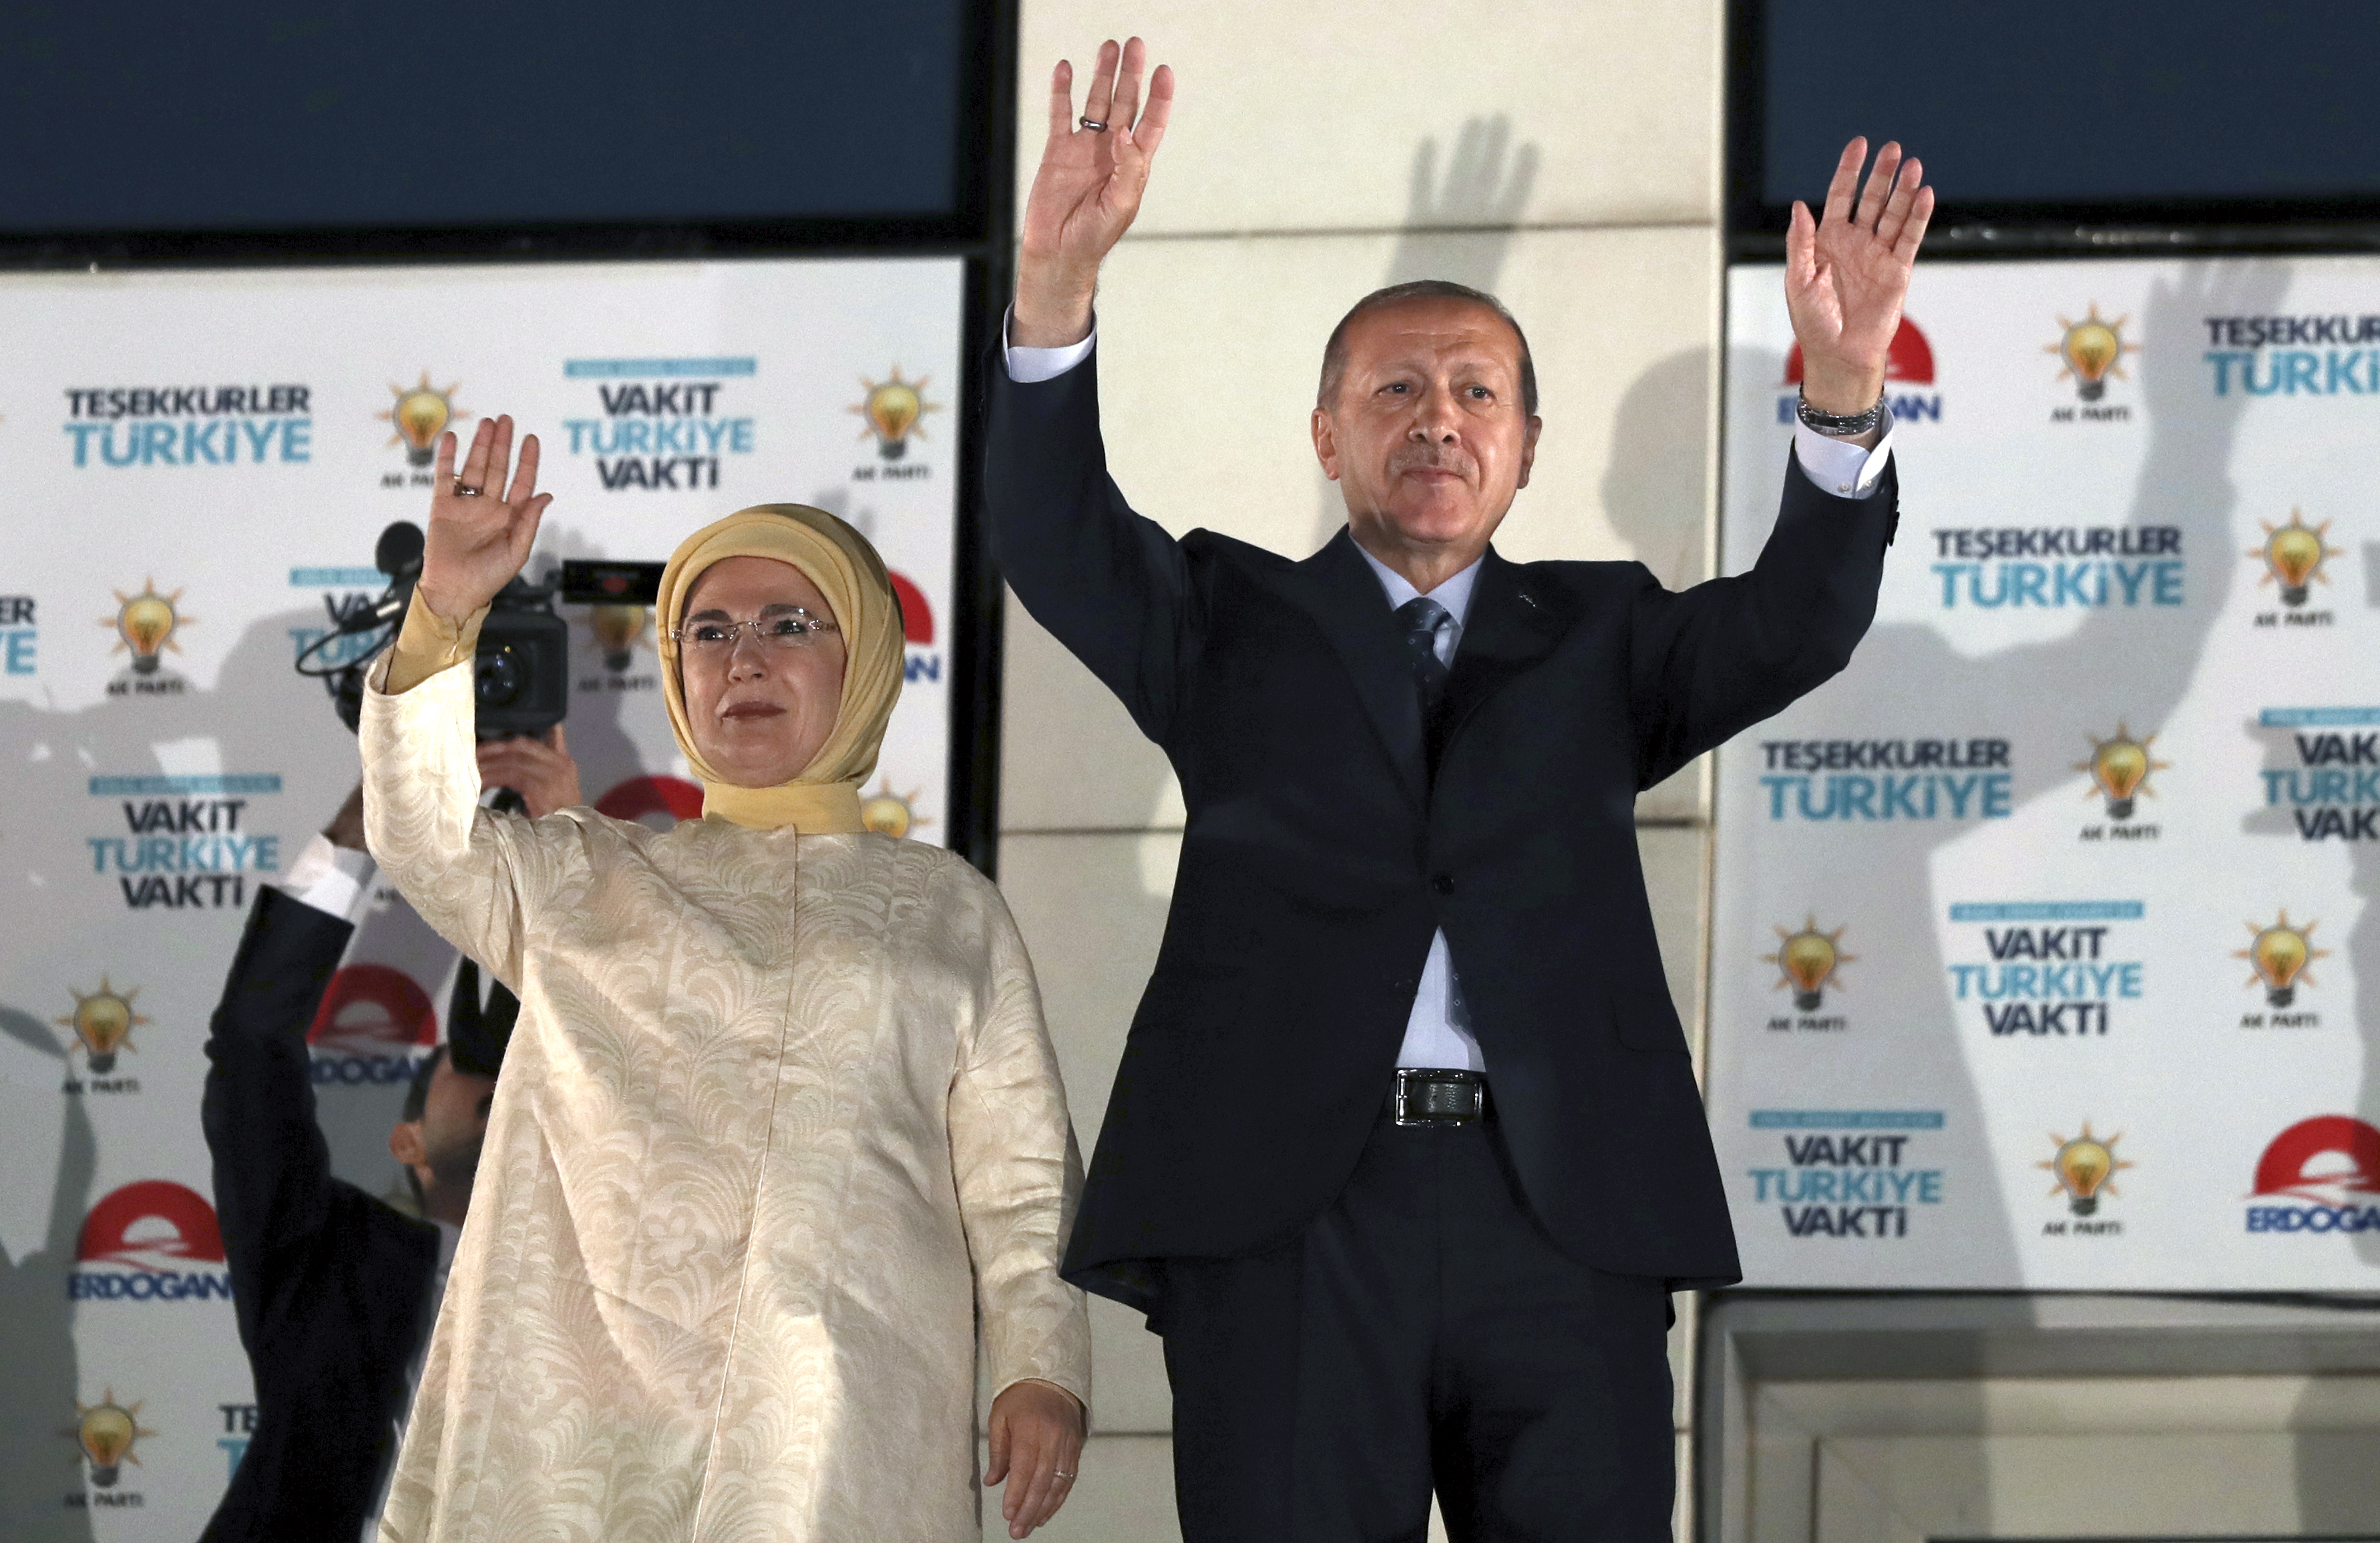 Τουρκία: Πρόεδρος και πάλι ο Ερντογάν από τον πρώτο γύρο με 52,5%